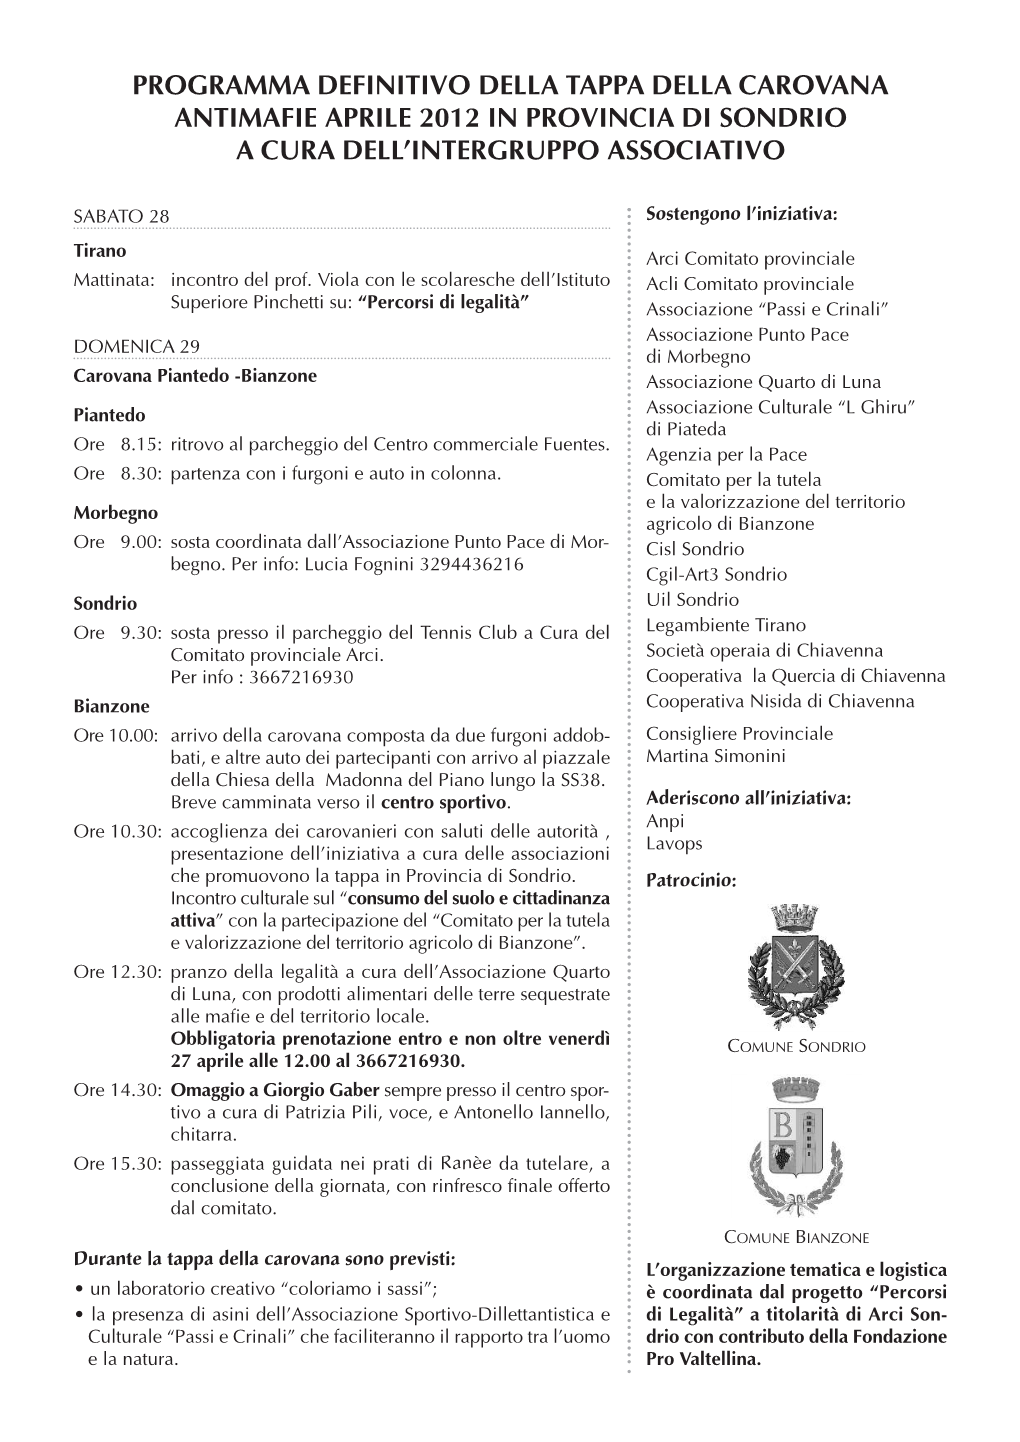 Programma Definitivo Della Tappa Della Carovana Antimafie Aprile 2012 in Provincia Di Sondrio a Cura Dell’Intergruppo Associativo